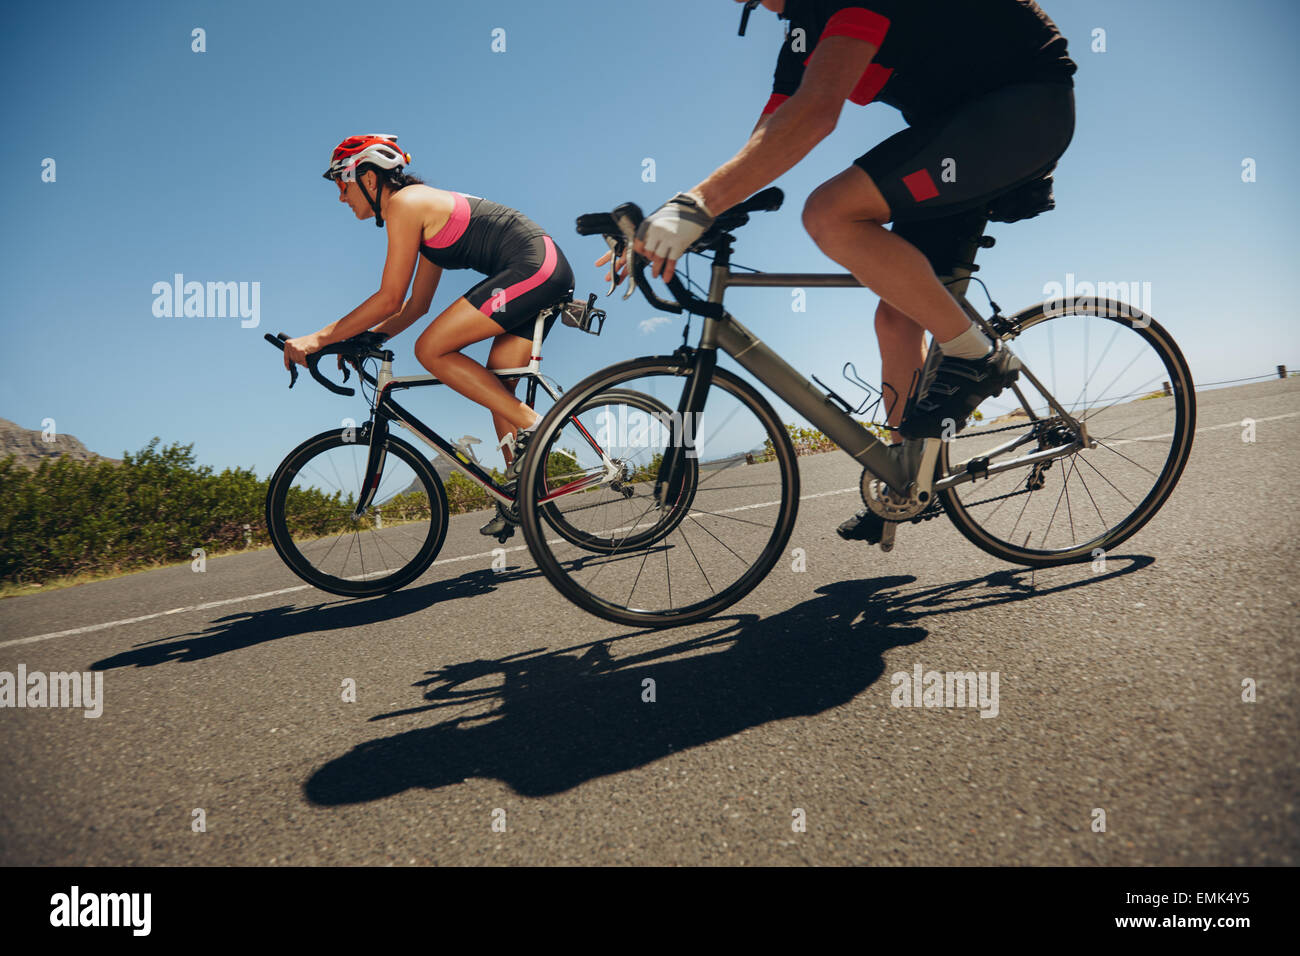 Lauffeuer ein Rennfahrer. Radfahrer Fahrrad bergab auf Landstraße. Üben für den Wettbewerb. Stockfoto